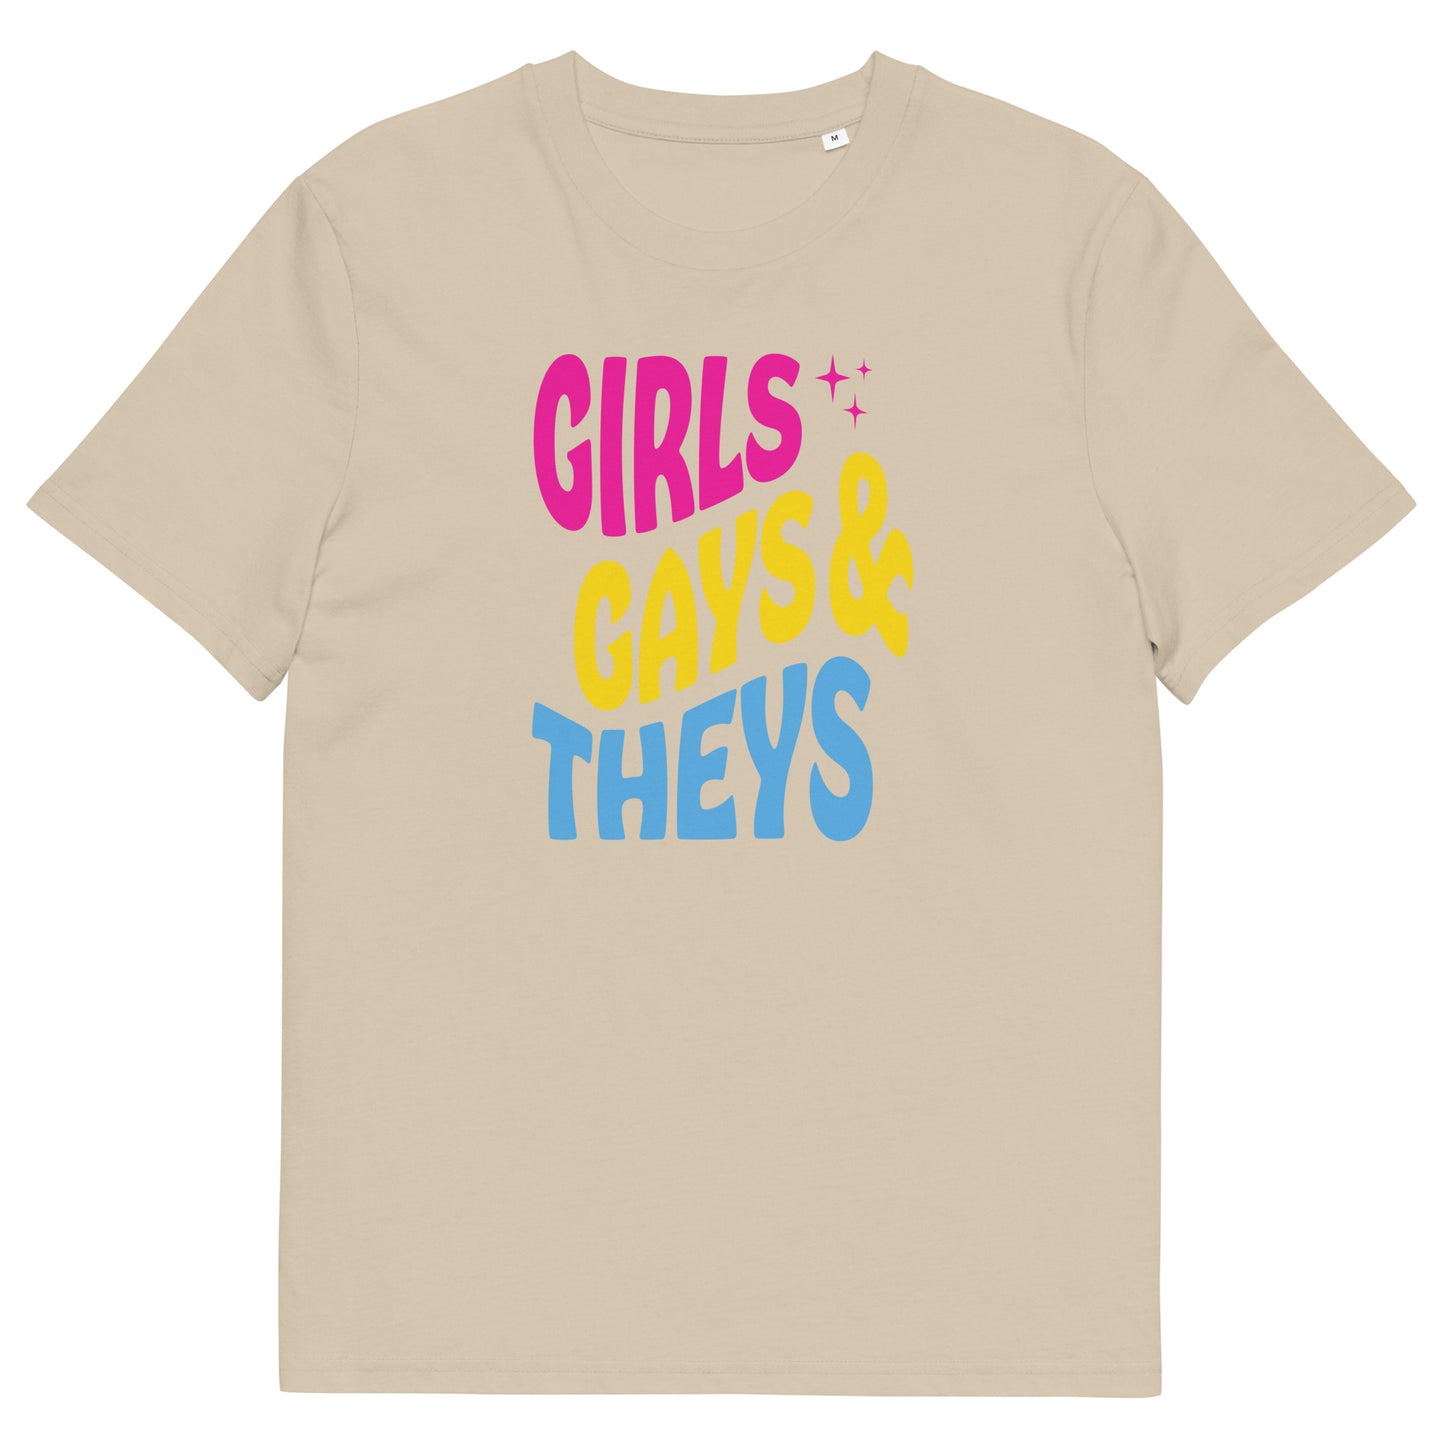 Organic Cotton T-shirt Print: Girls Gays & Theys (Pan)